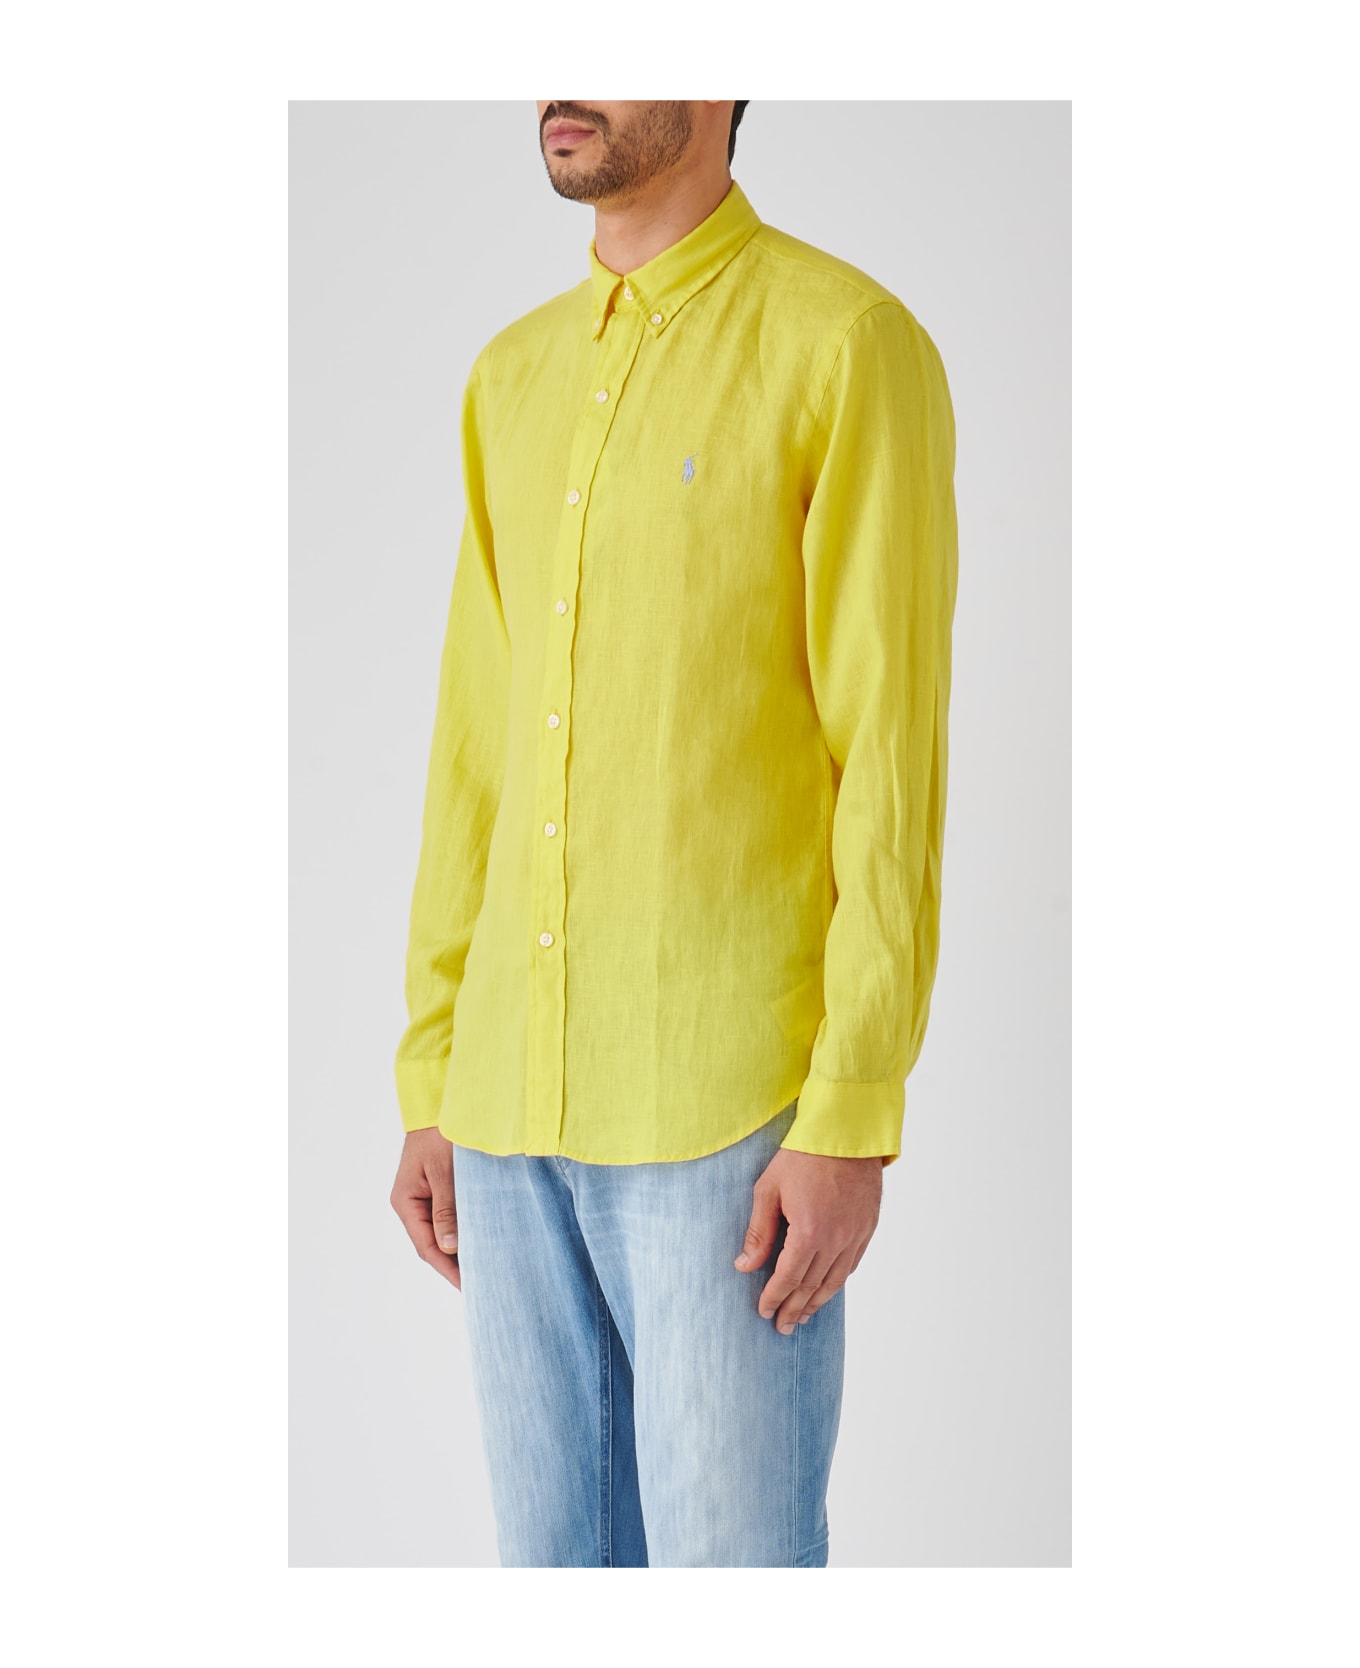 Polo Ralph Lauren Long Sleeve Sport Shirt Shirt - GIALLO